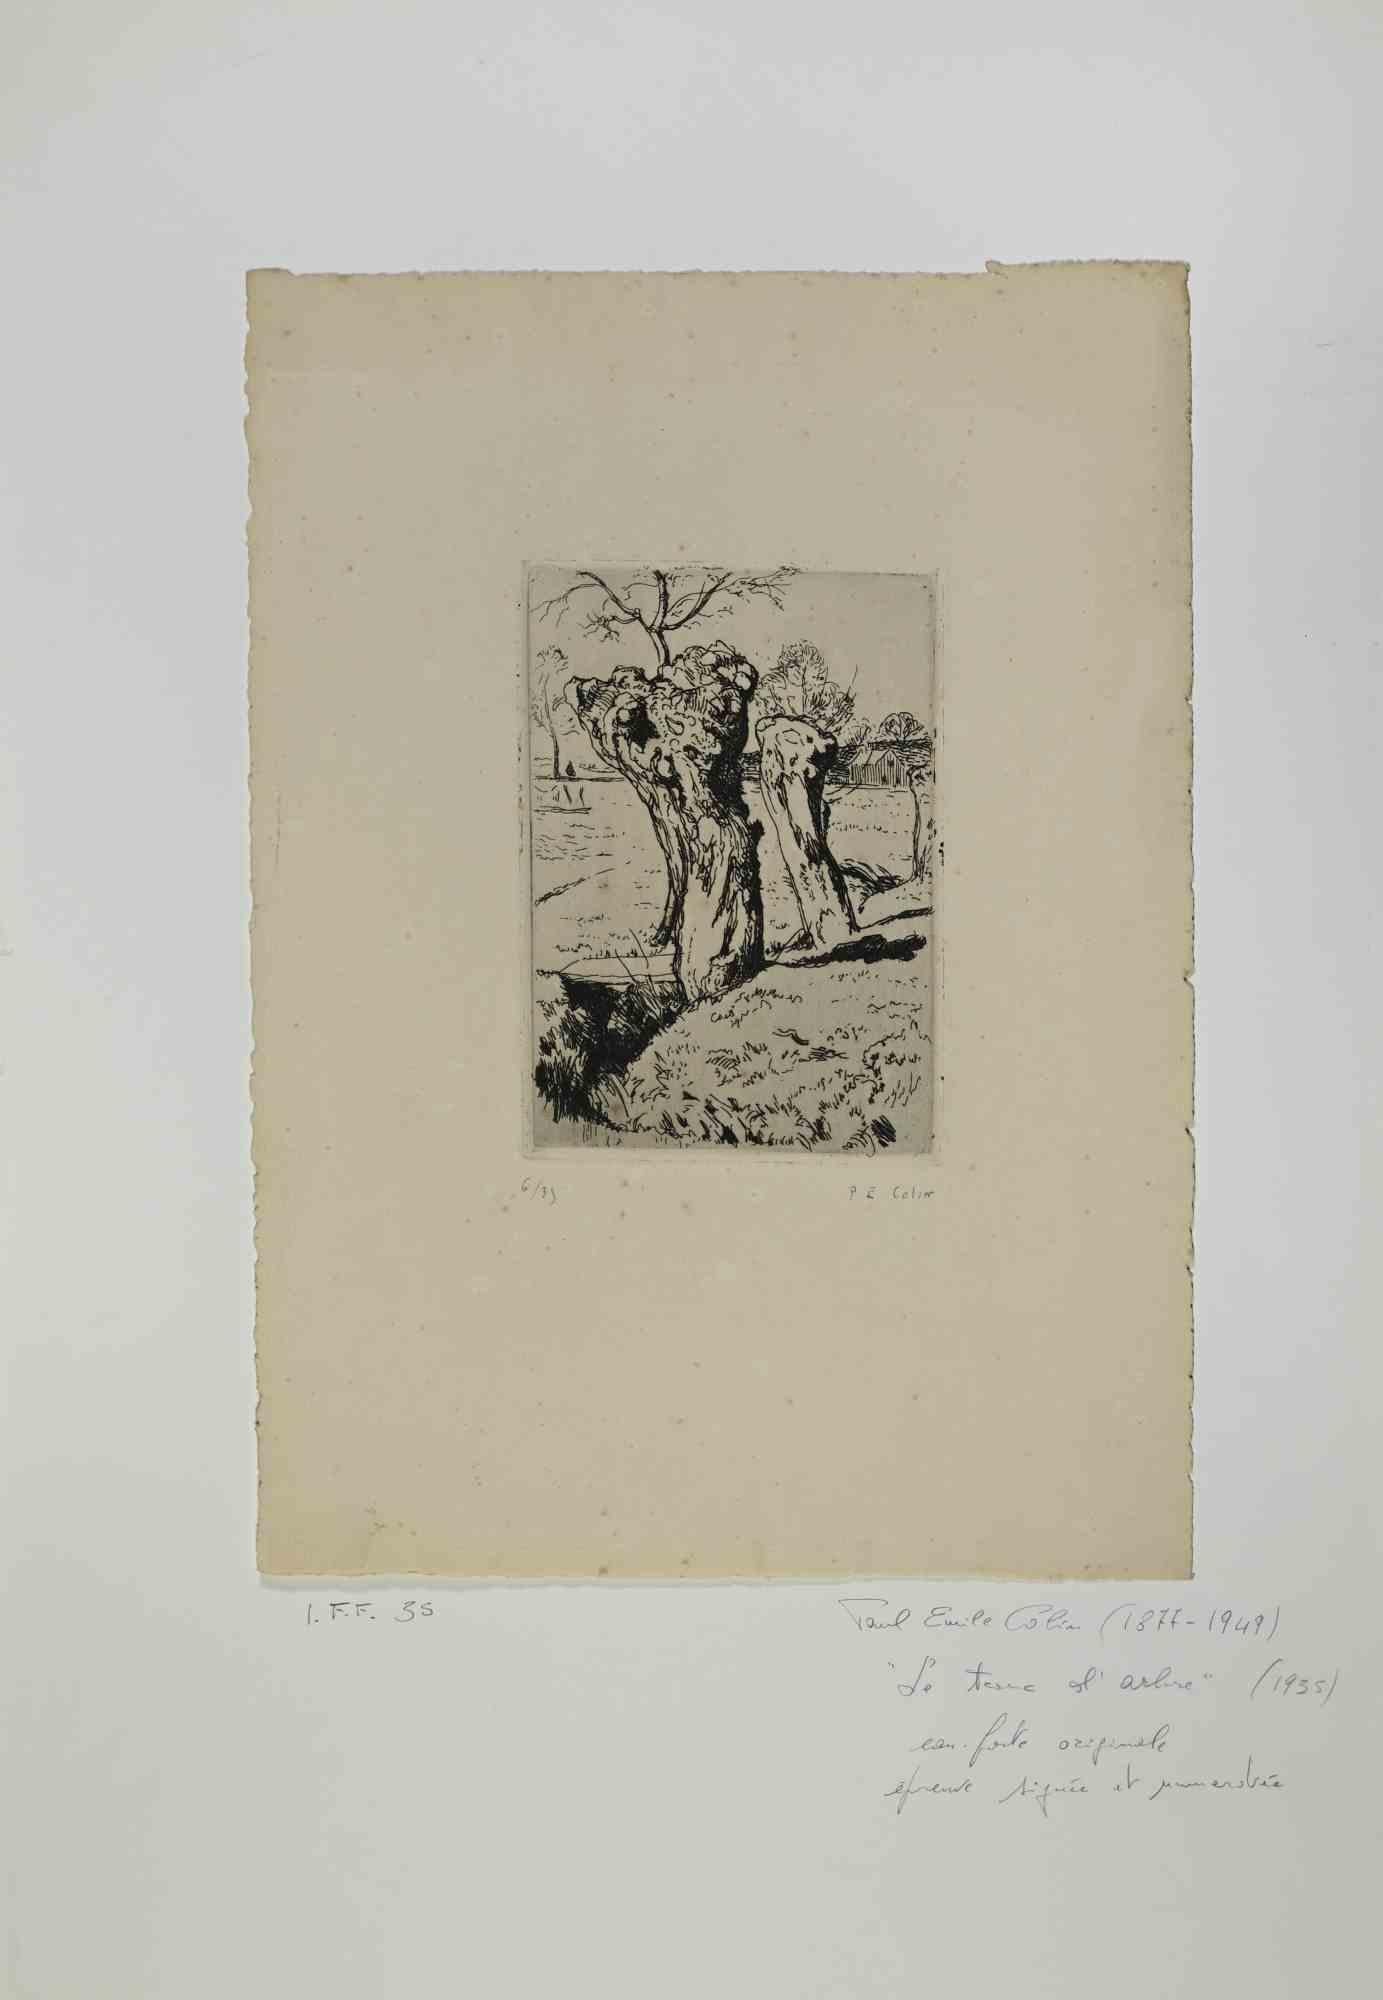 Le Tronc de l'arbre est une œuvre d'art réalisée en 1935, par l'artiste français Paul Emile Colin .

Gravure en noir et blanc sur papier. Signé à la main dans le coin droit. Édition limitée à 35 exemplaires, ex. n. 6 

L'œuvre d'art est attachée au